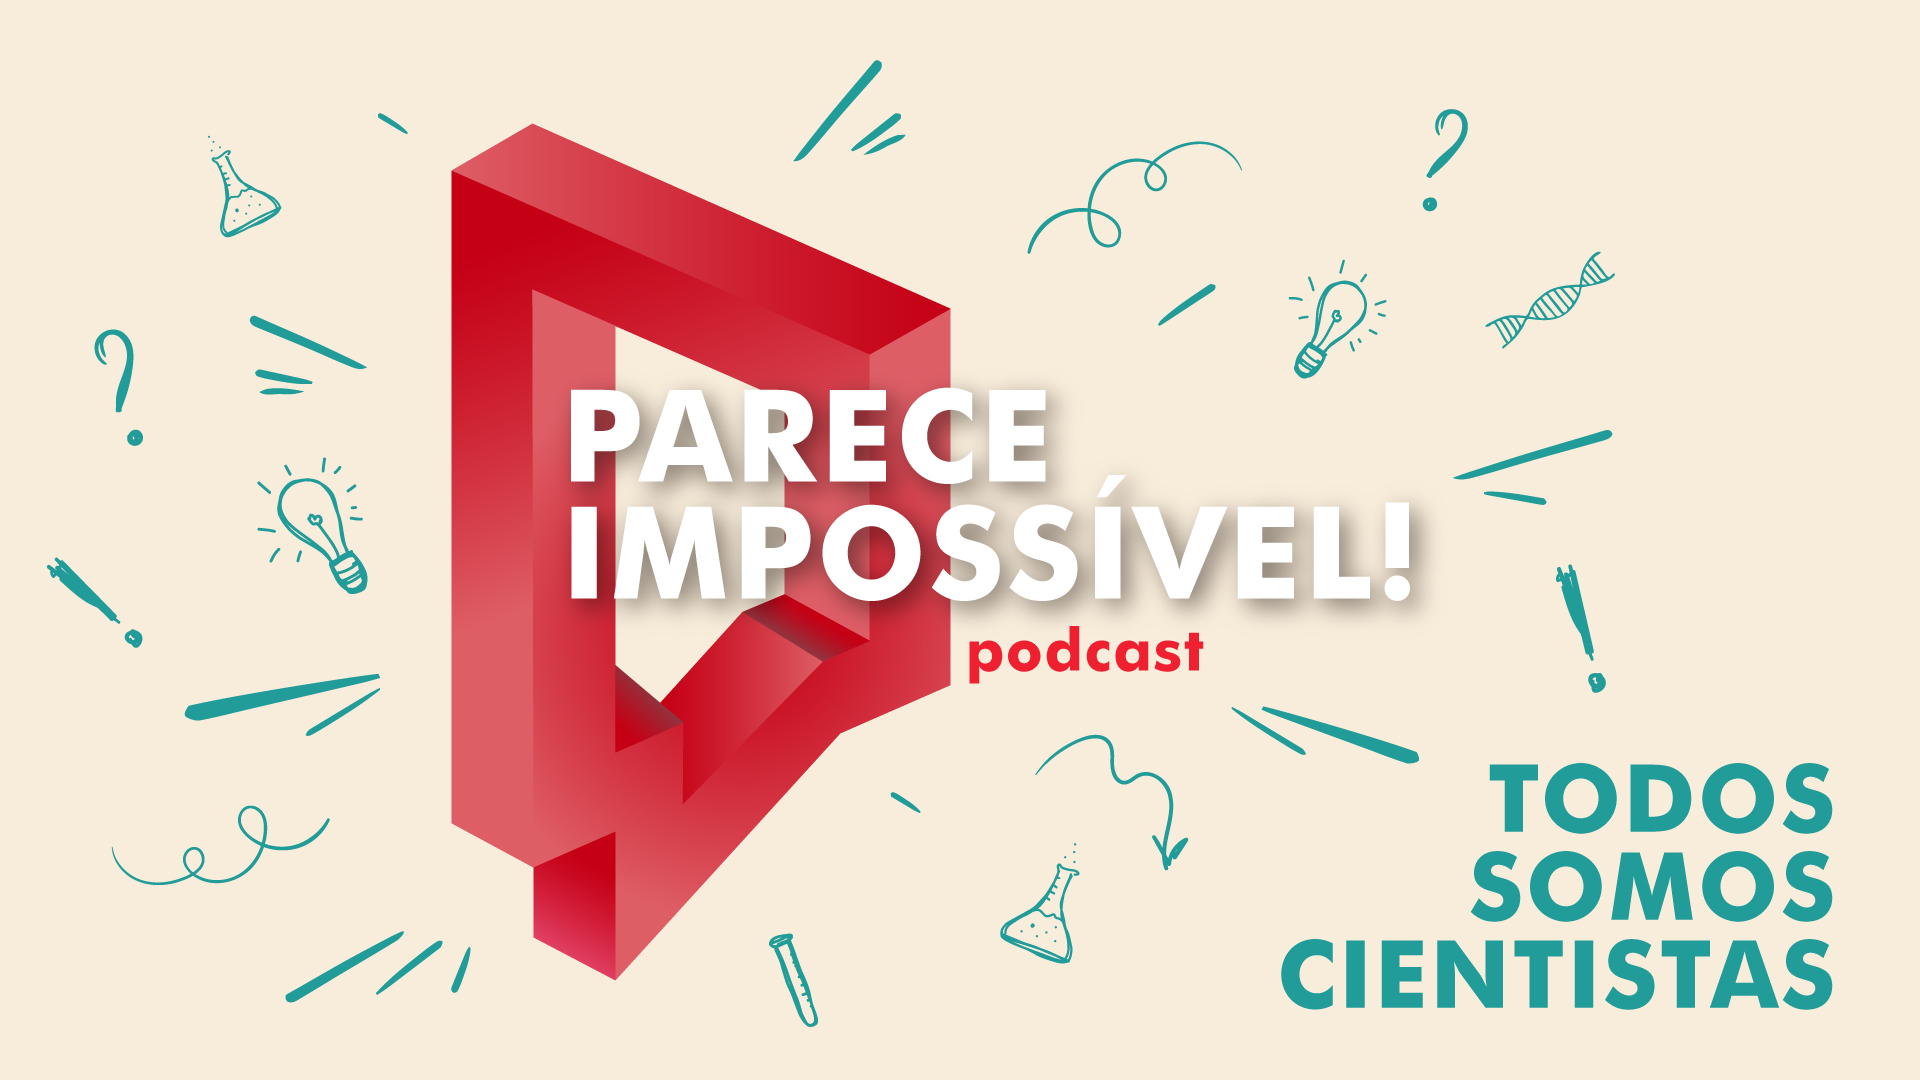 A ciência e o humor juntos no podcast "Parece Impossível!"